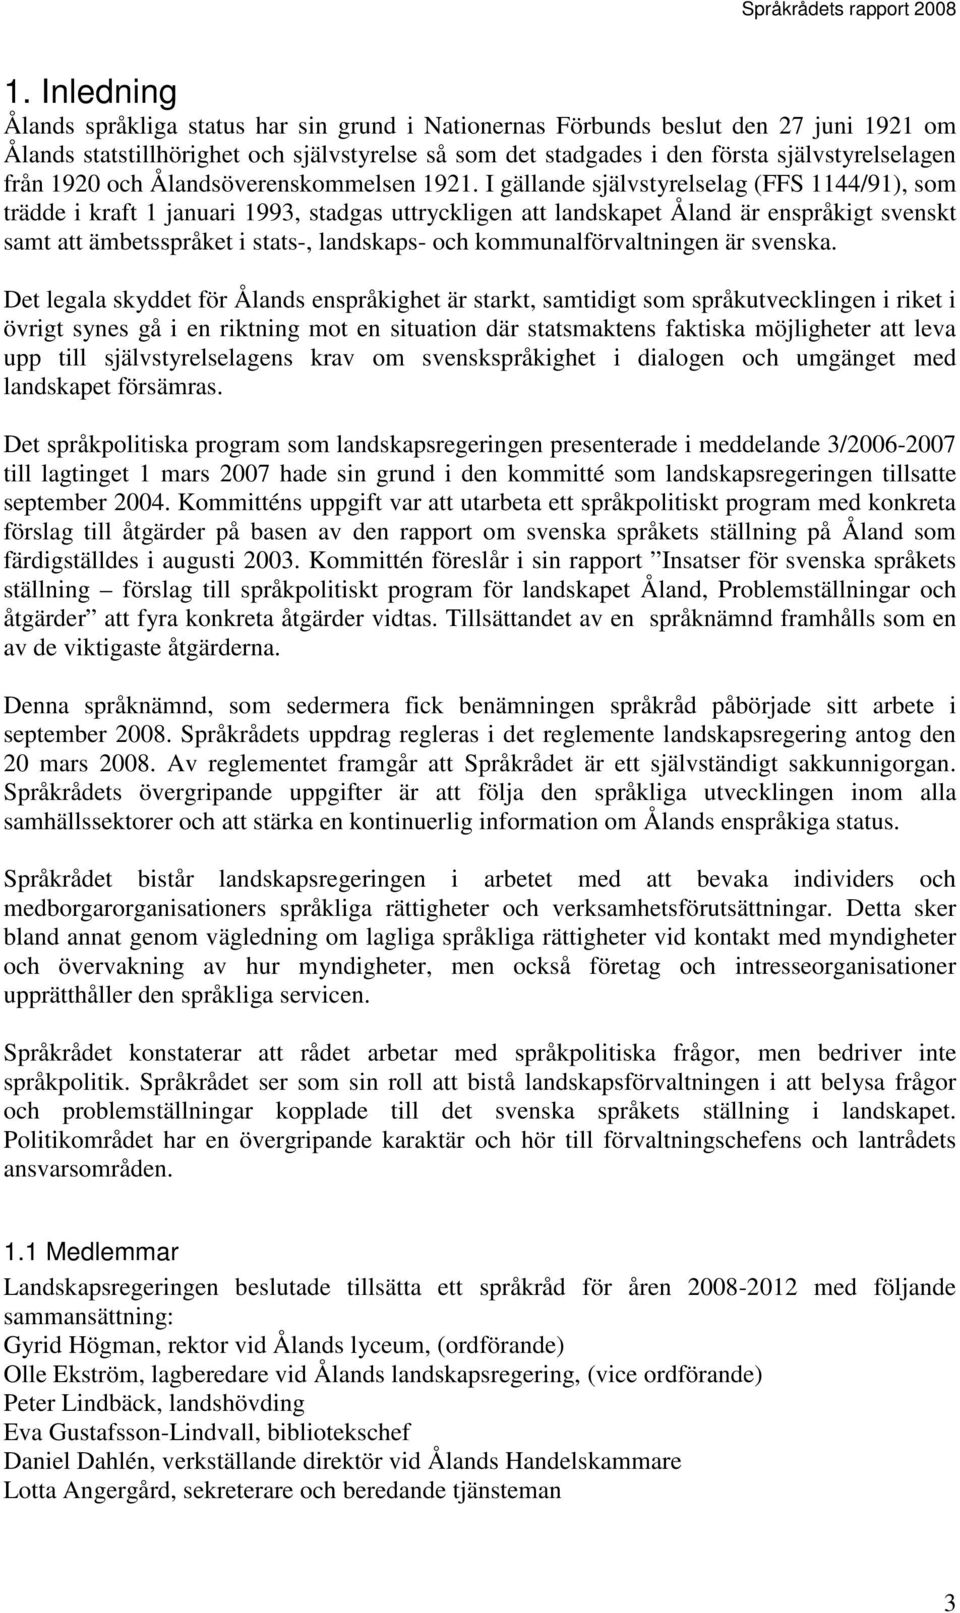 I gällande självstyrelselag (FFS 1144/91), som trädde i kraft 1 januari 1993, stadgas uttryckligen att landskapet Åland är enspråkigt svenskt samt att ämbetsspråket i stats-, landskaps- och